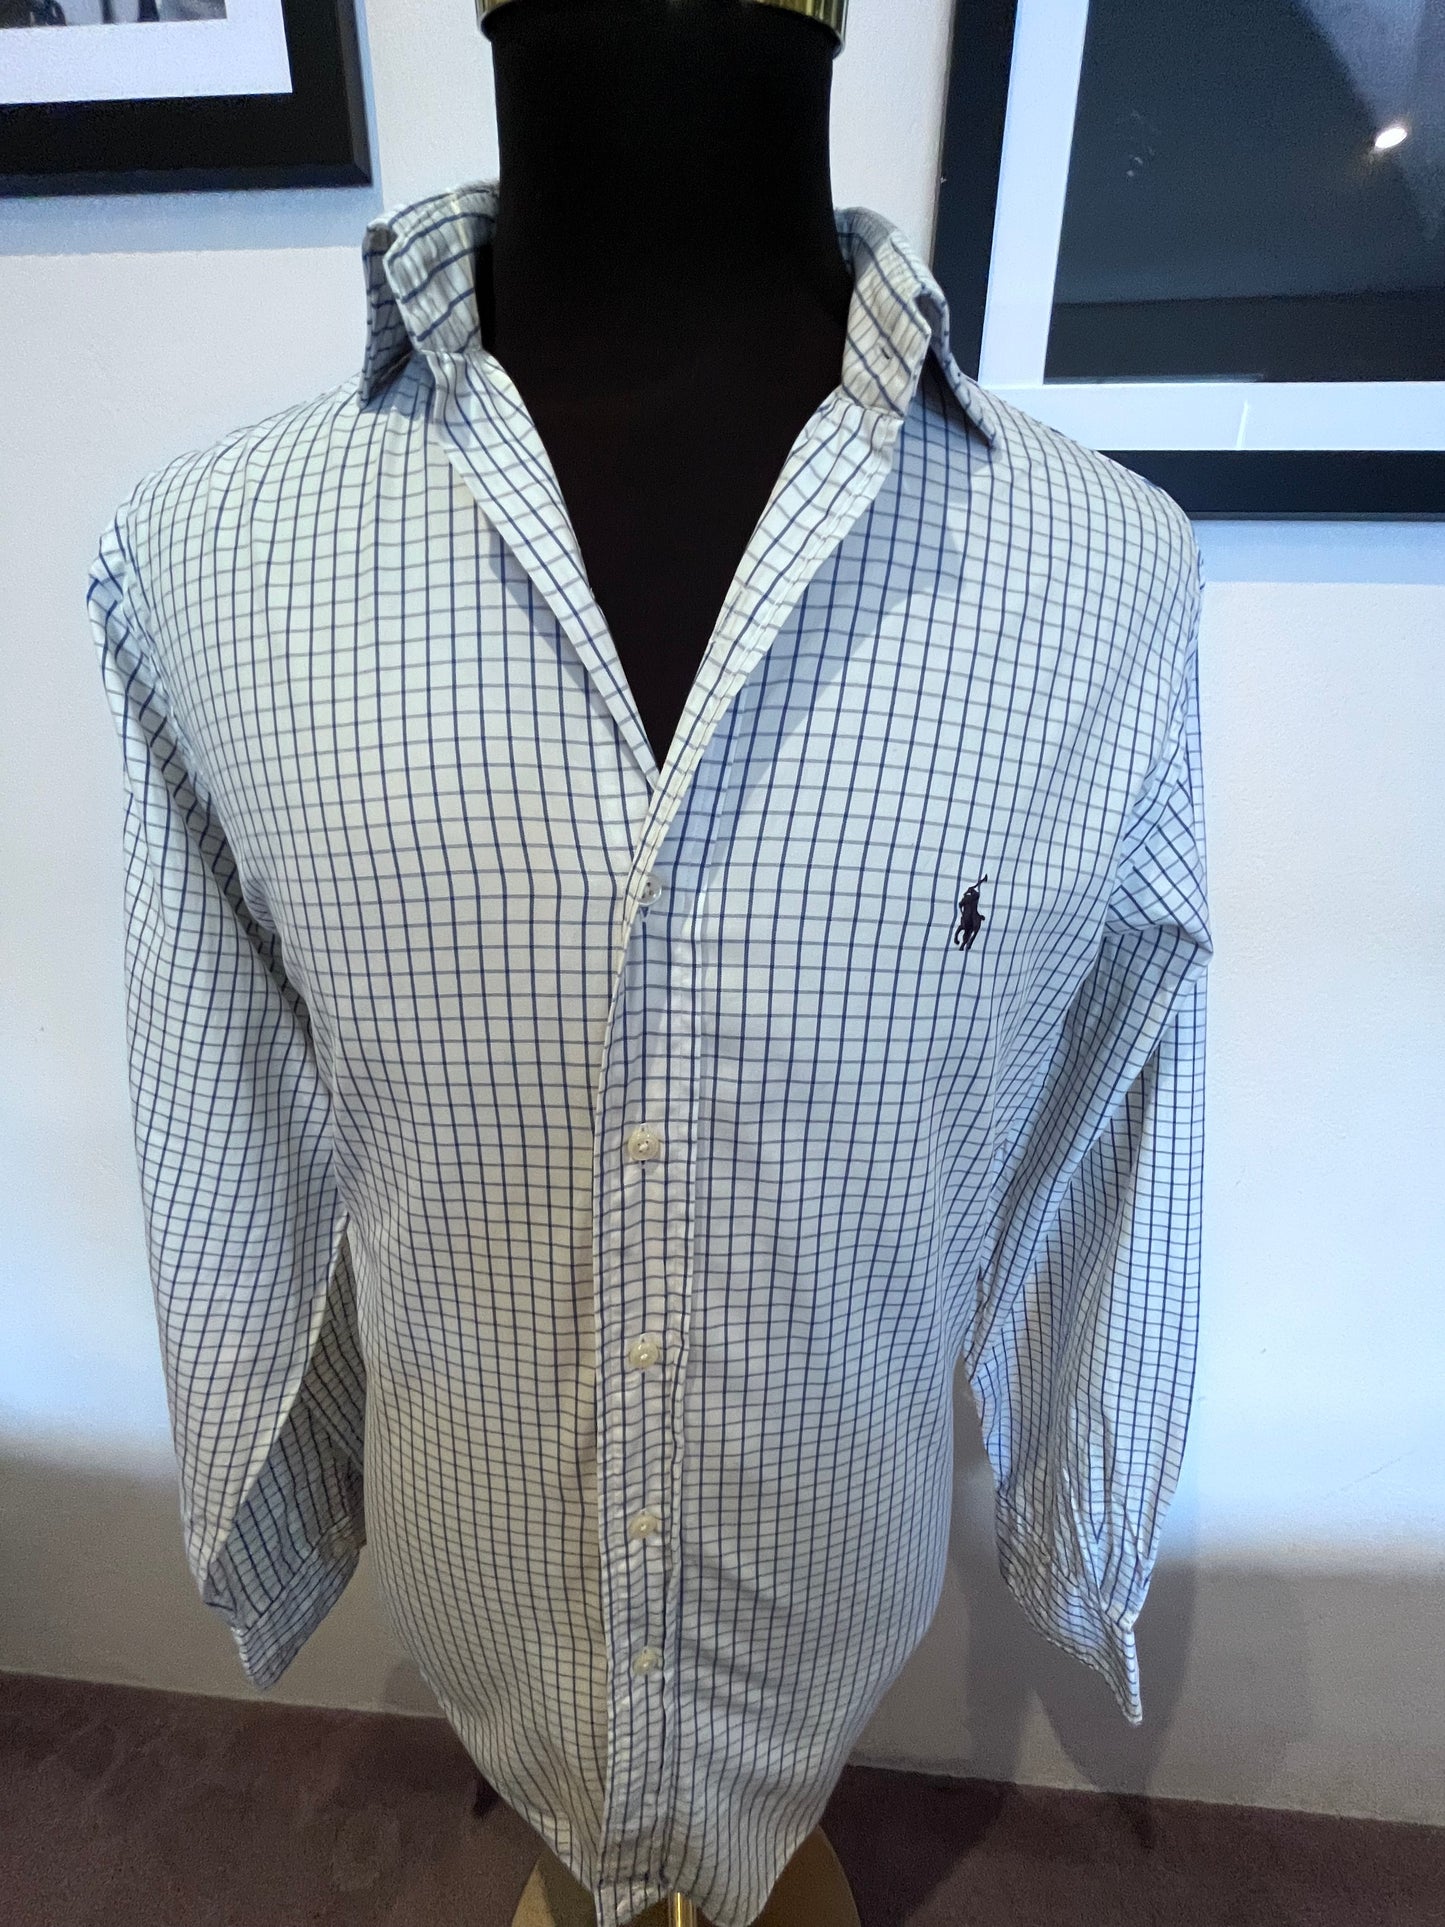 Ralph Lauren 100% Cotton White Blue Check Shirt Size Large Classic Fit